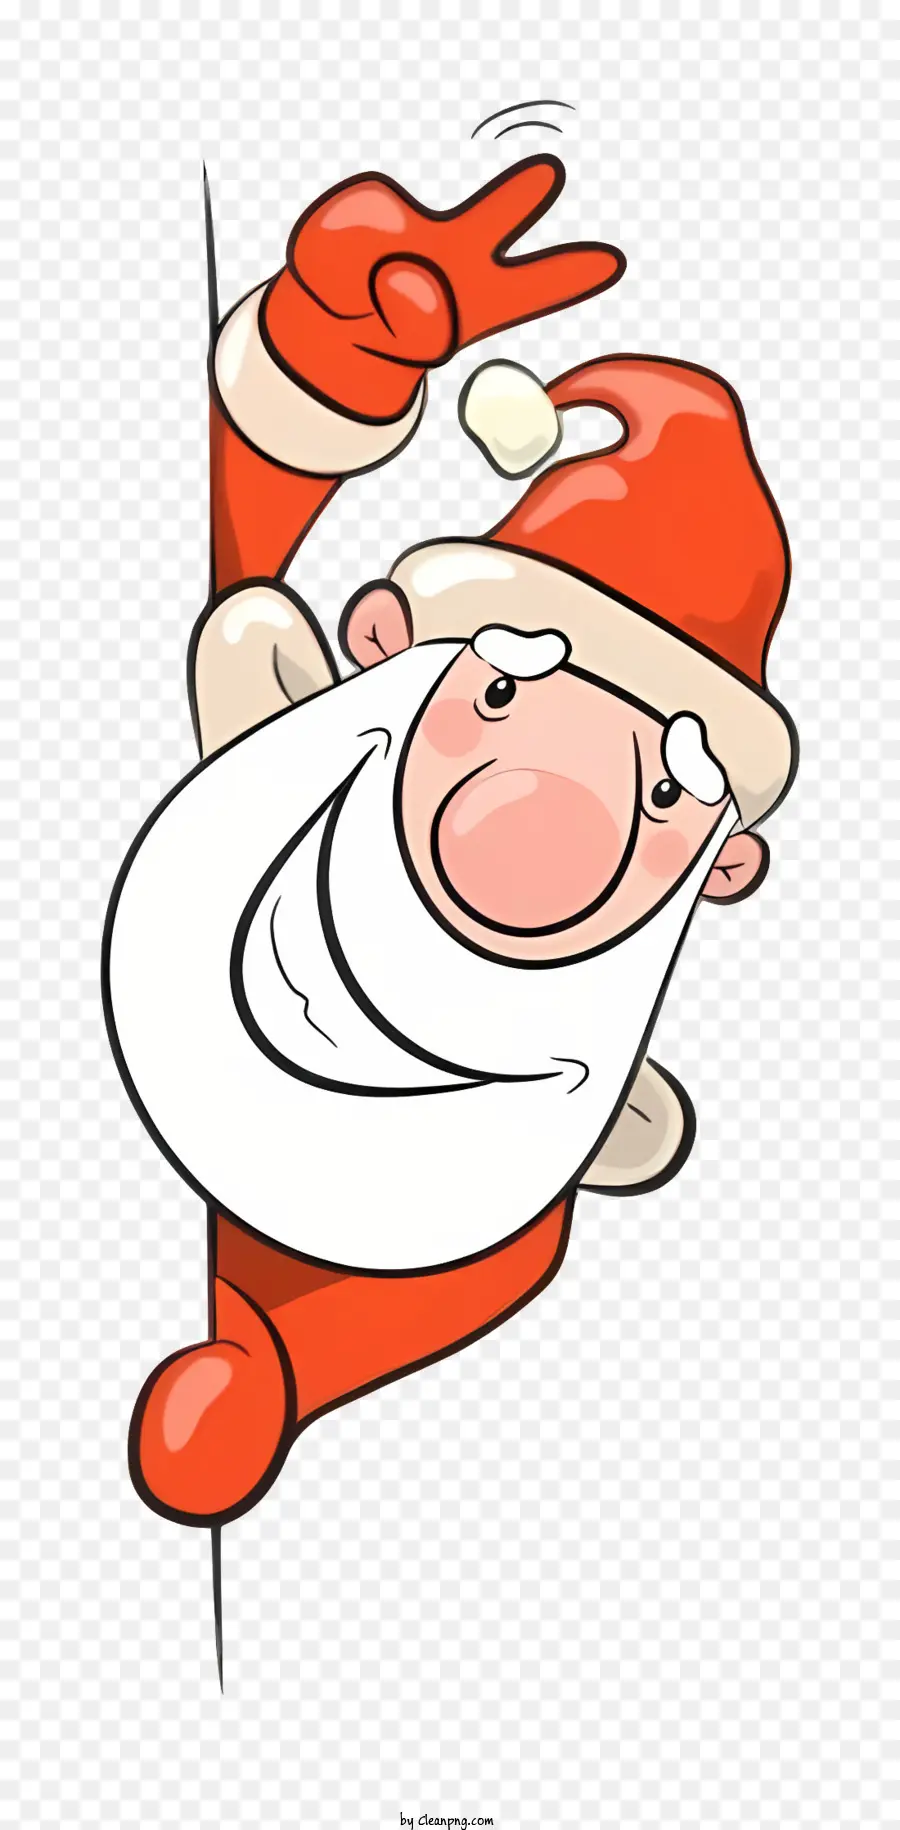 Santa Claus Figur Friedenszeichen Cartoon-ähnliches Bild Schwarz-Weiß-Linien rot und weißer Weihnachtsmannanzug - Cartoon Santa Holding Friedenszeichen und Jubel erinnern